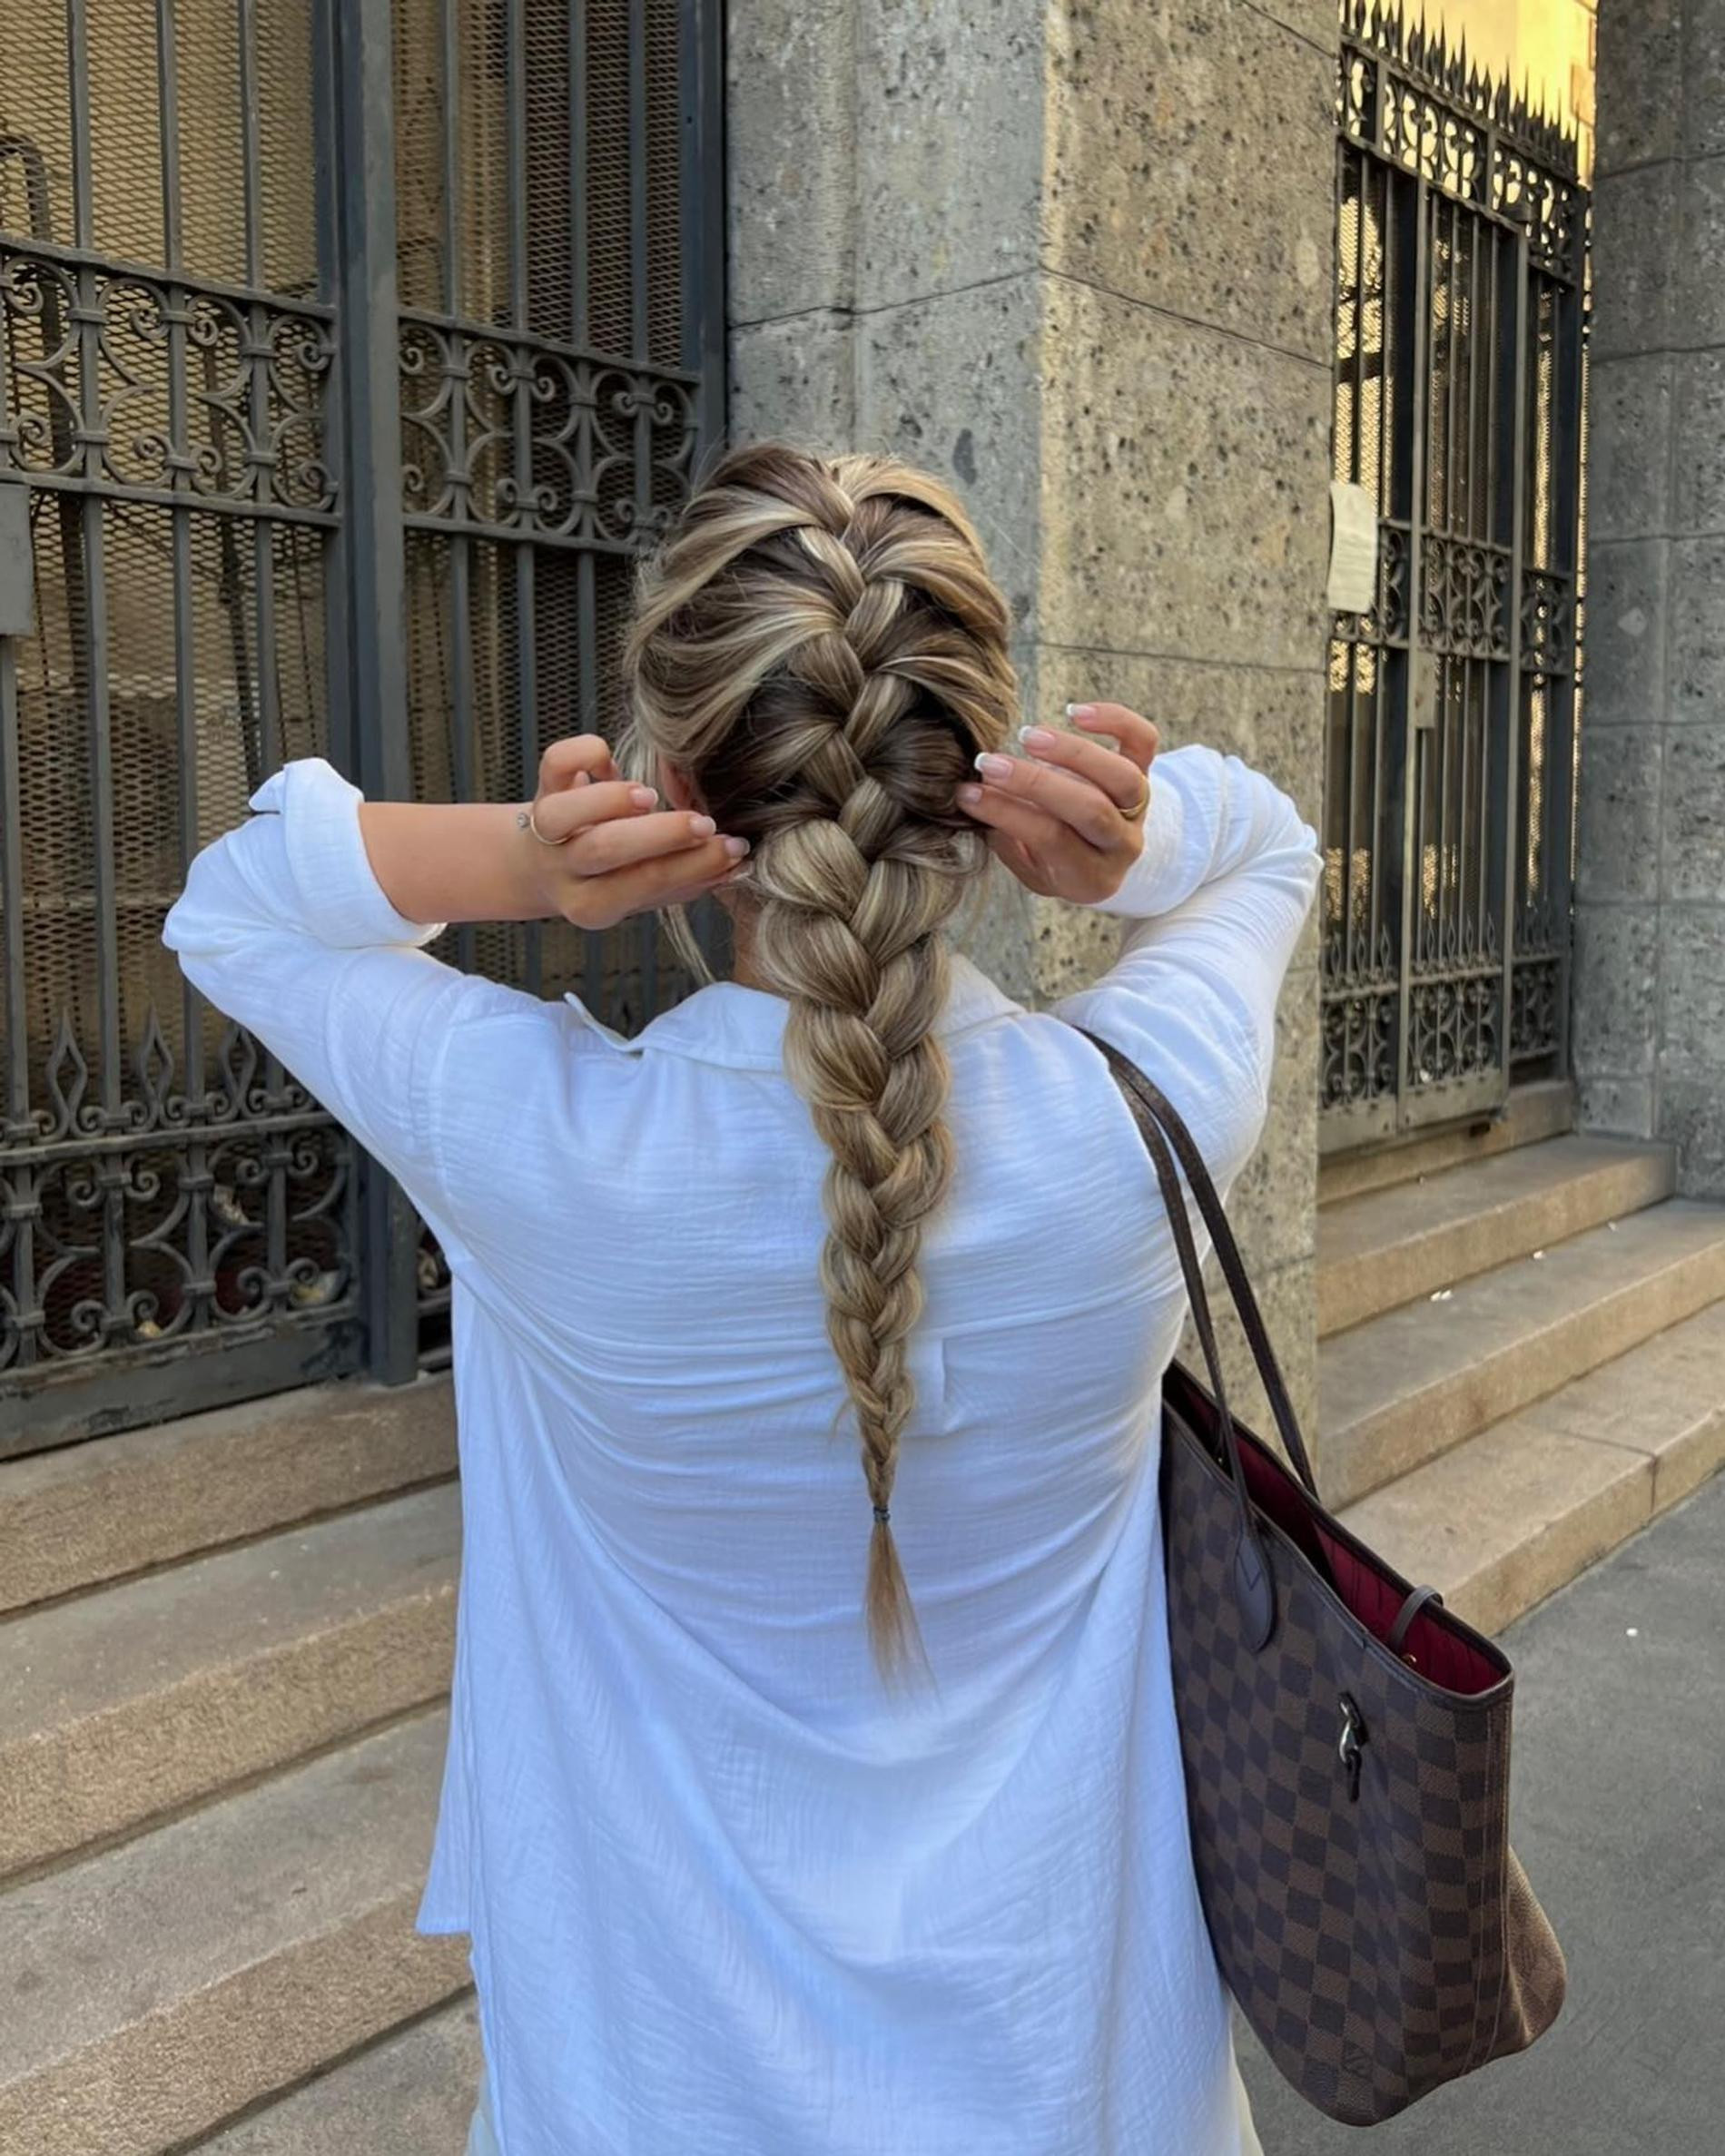 Регулярная практика — залог быстрого плетения французской косы. Фото: Инстаграм* @roralovestrand